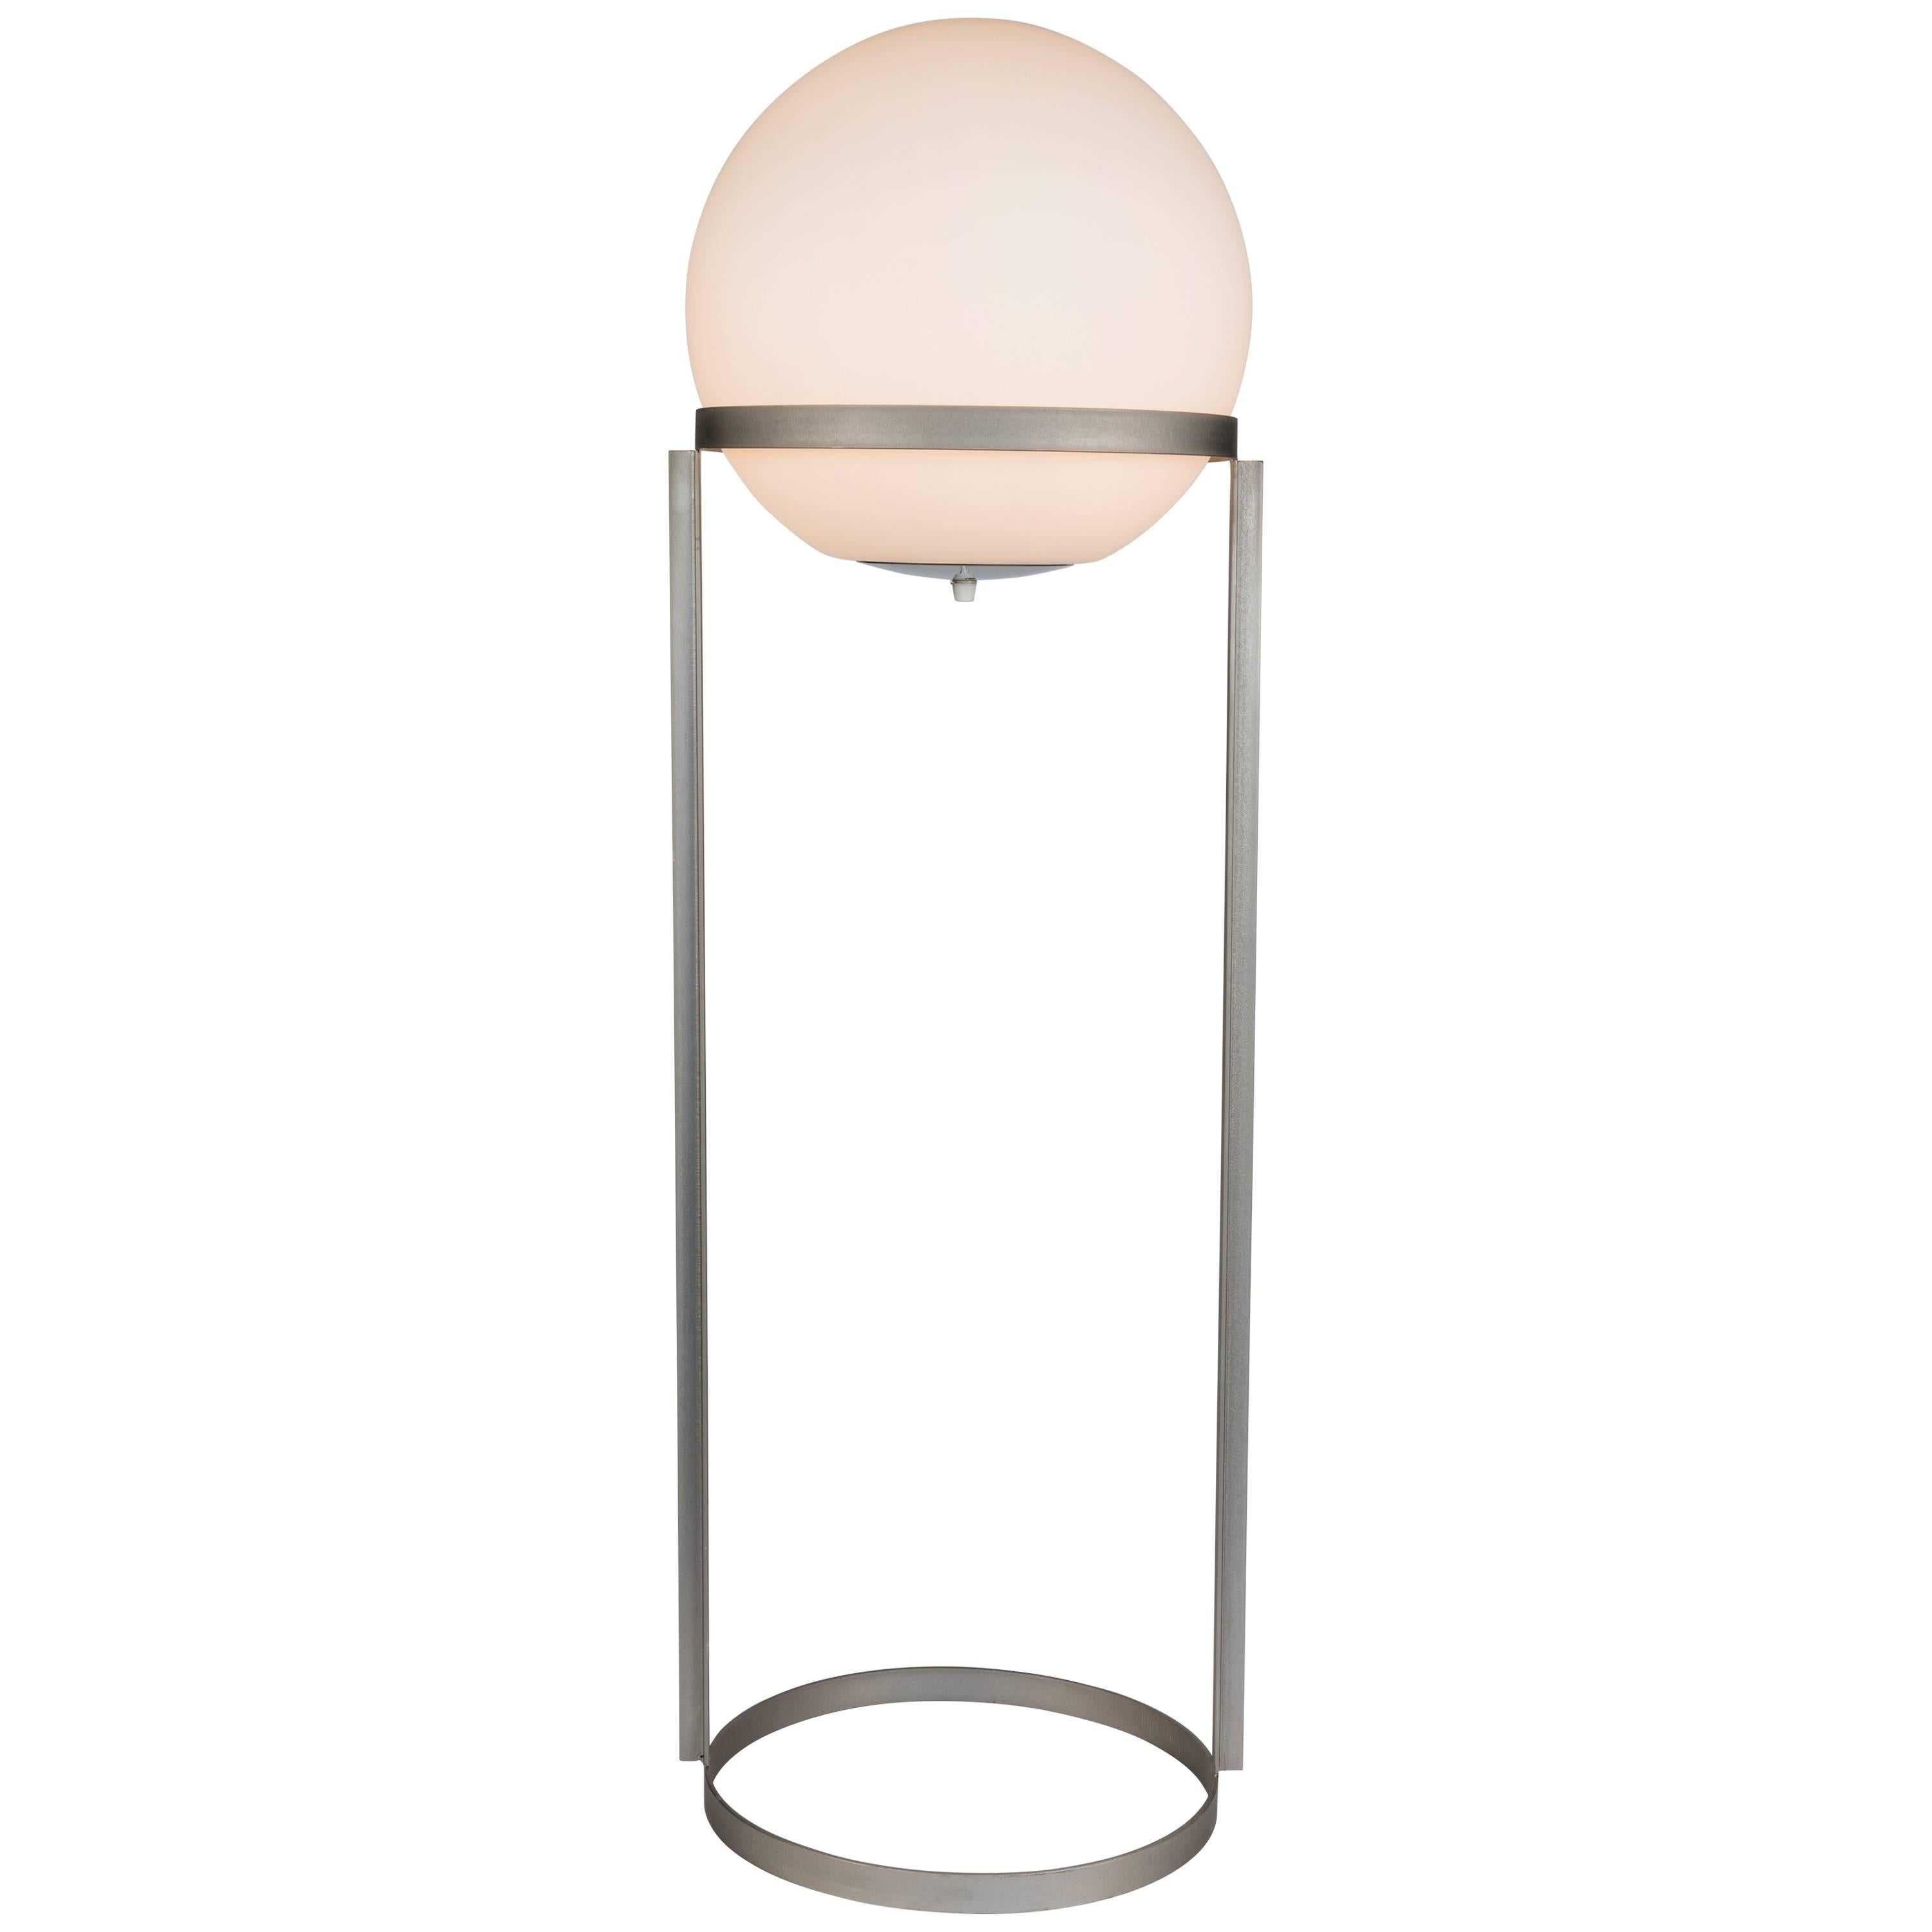 Lampadaire Carl Aubo¨ck modèle 4095. Conçue en 1950, cette lampe en édition limitée influencée par le Bauhaus se compose d'une base en fer nickelé nouvellement coulée à partir du moule original et d'une sphère en verre opalin mat d'époque, achetée